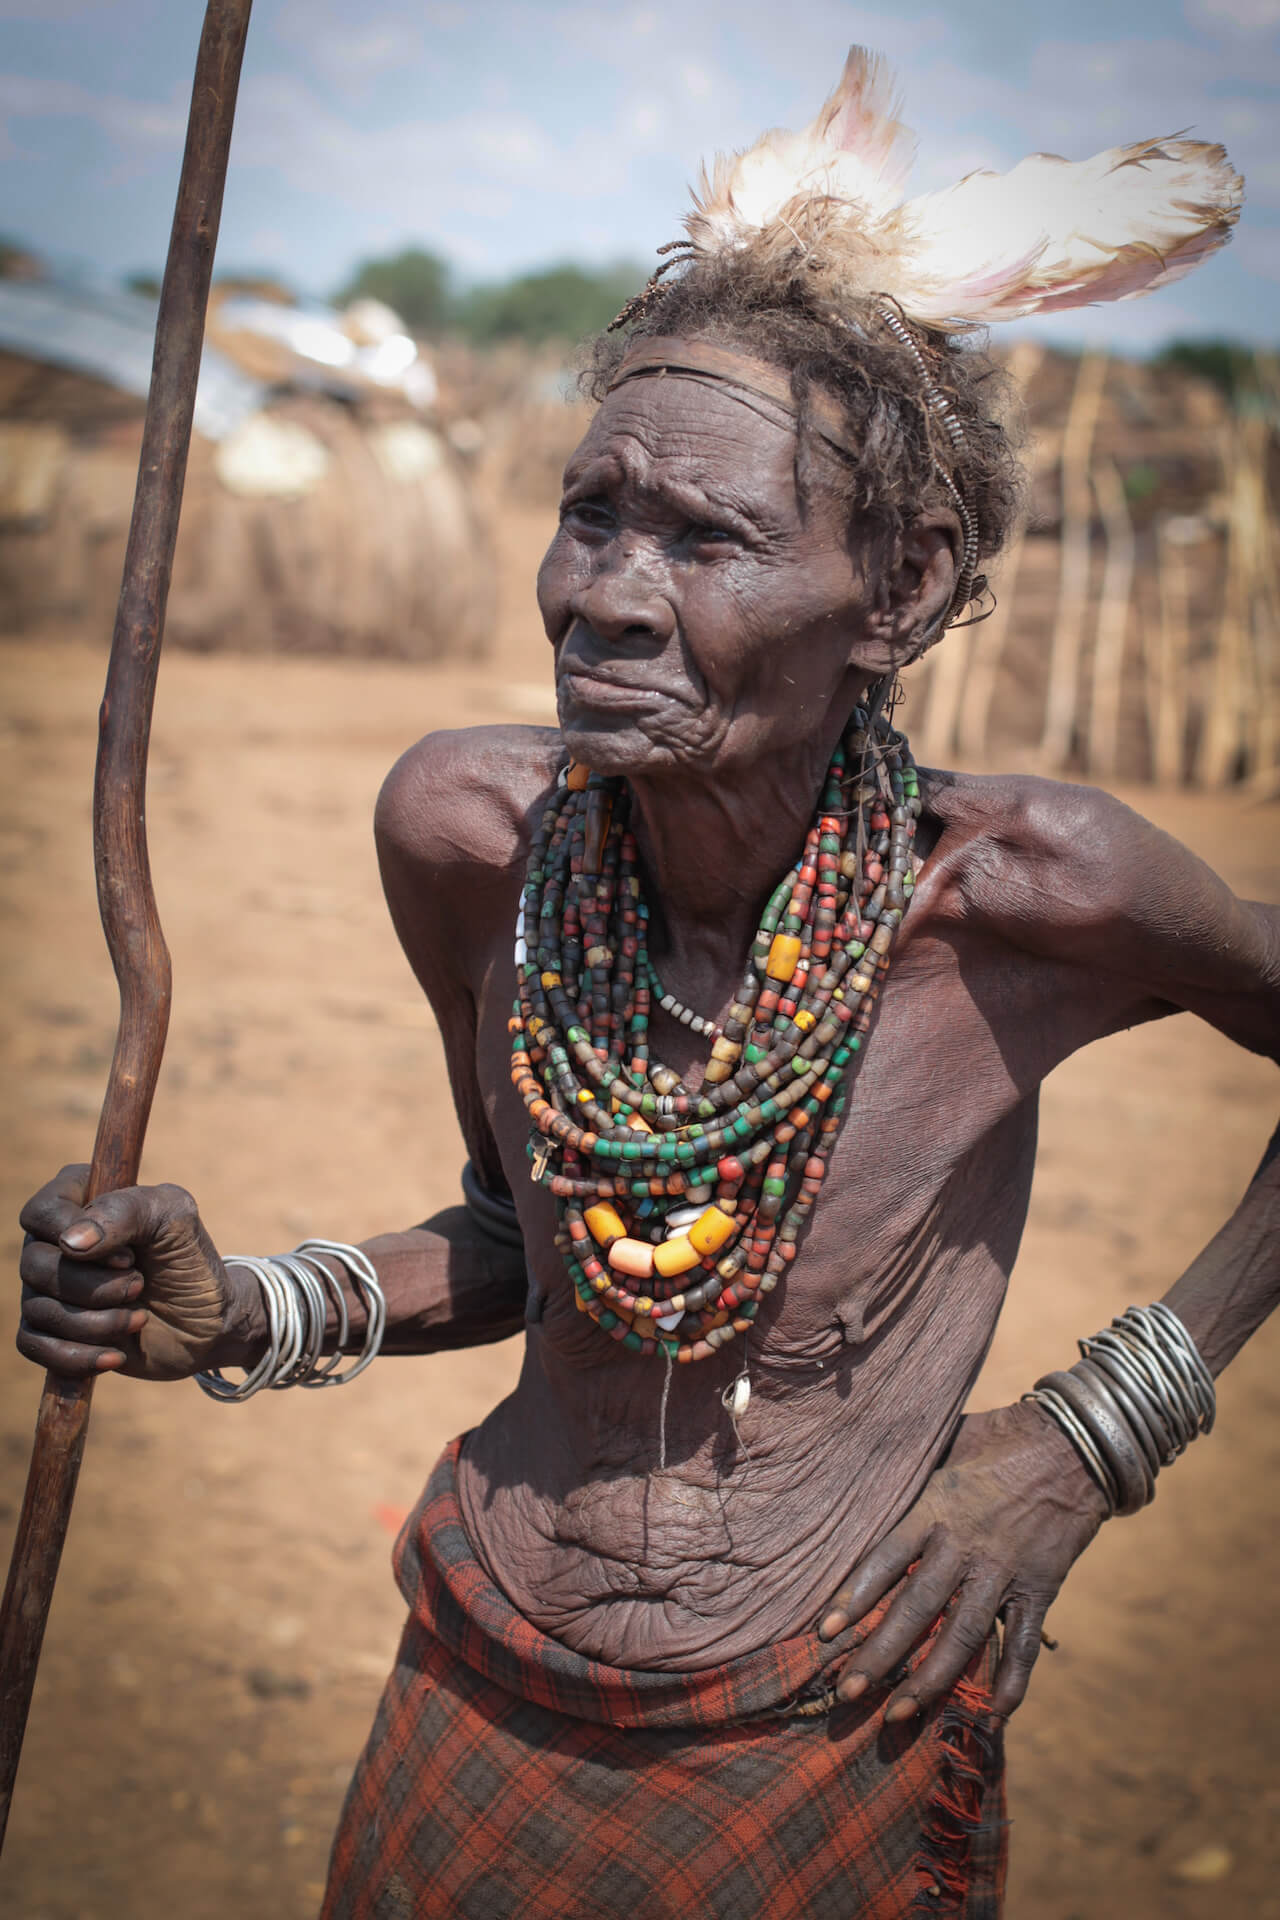 Divocí Dasanečové, jižní Etiopie - Planeta lidí